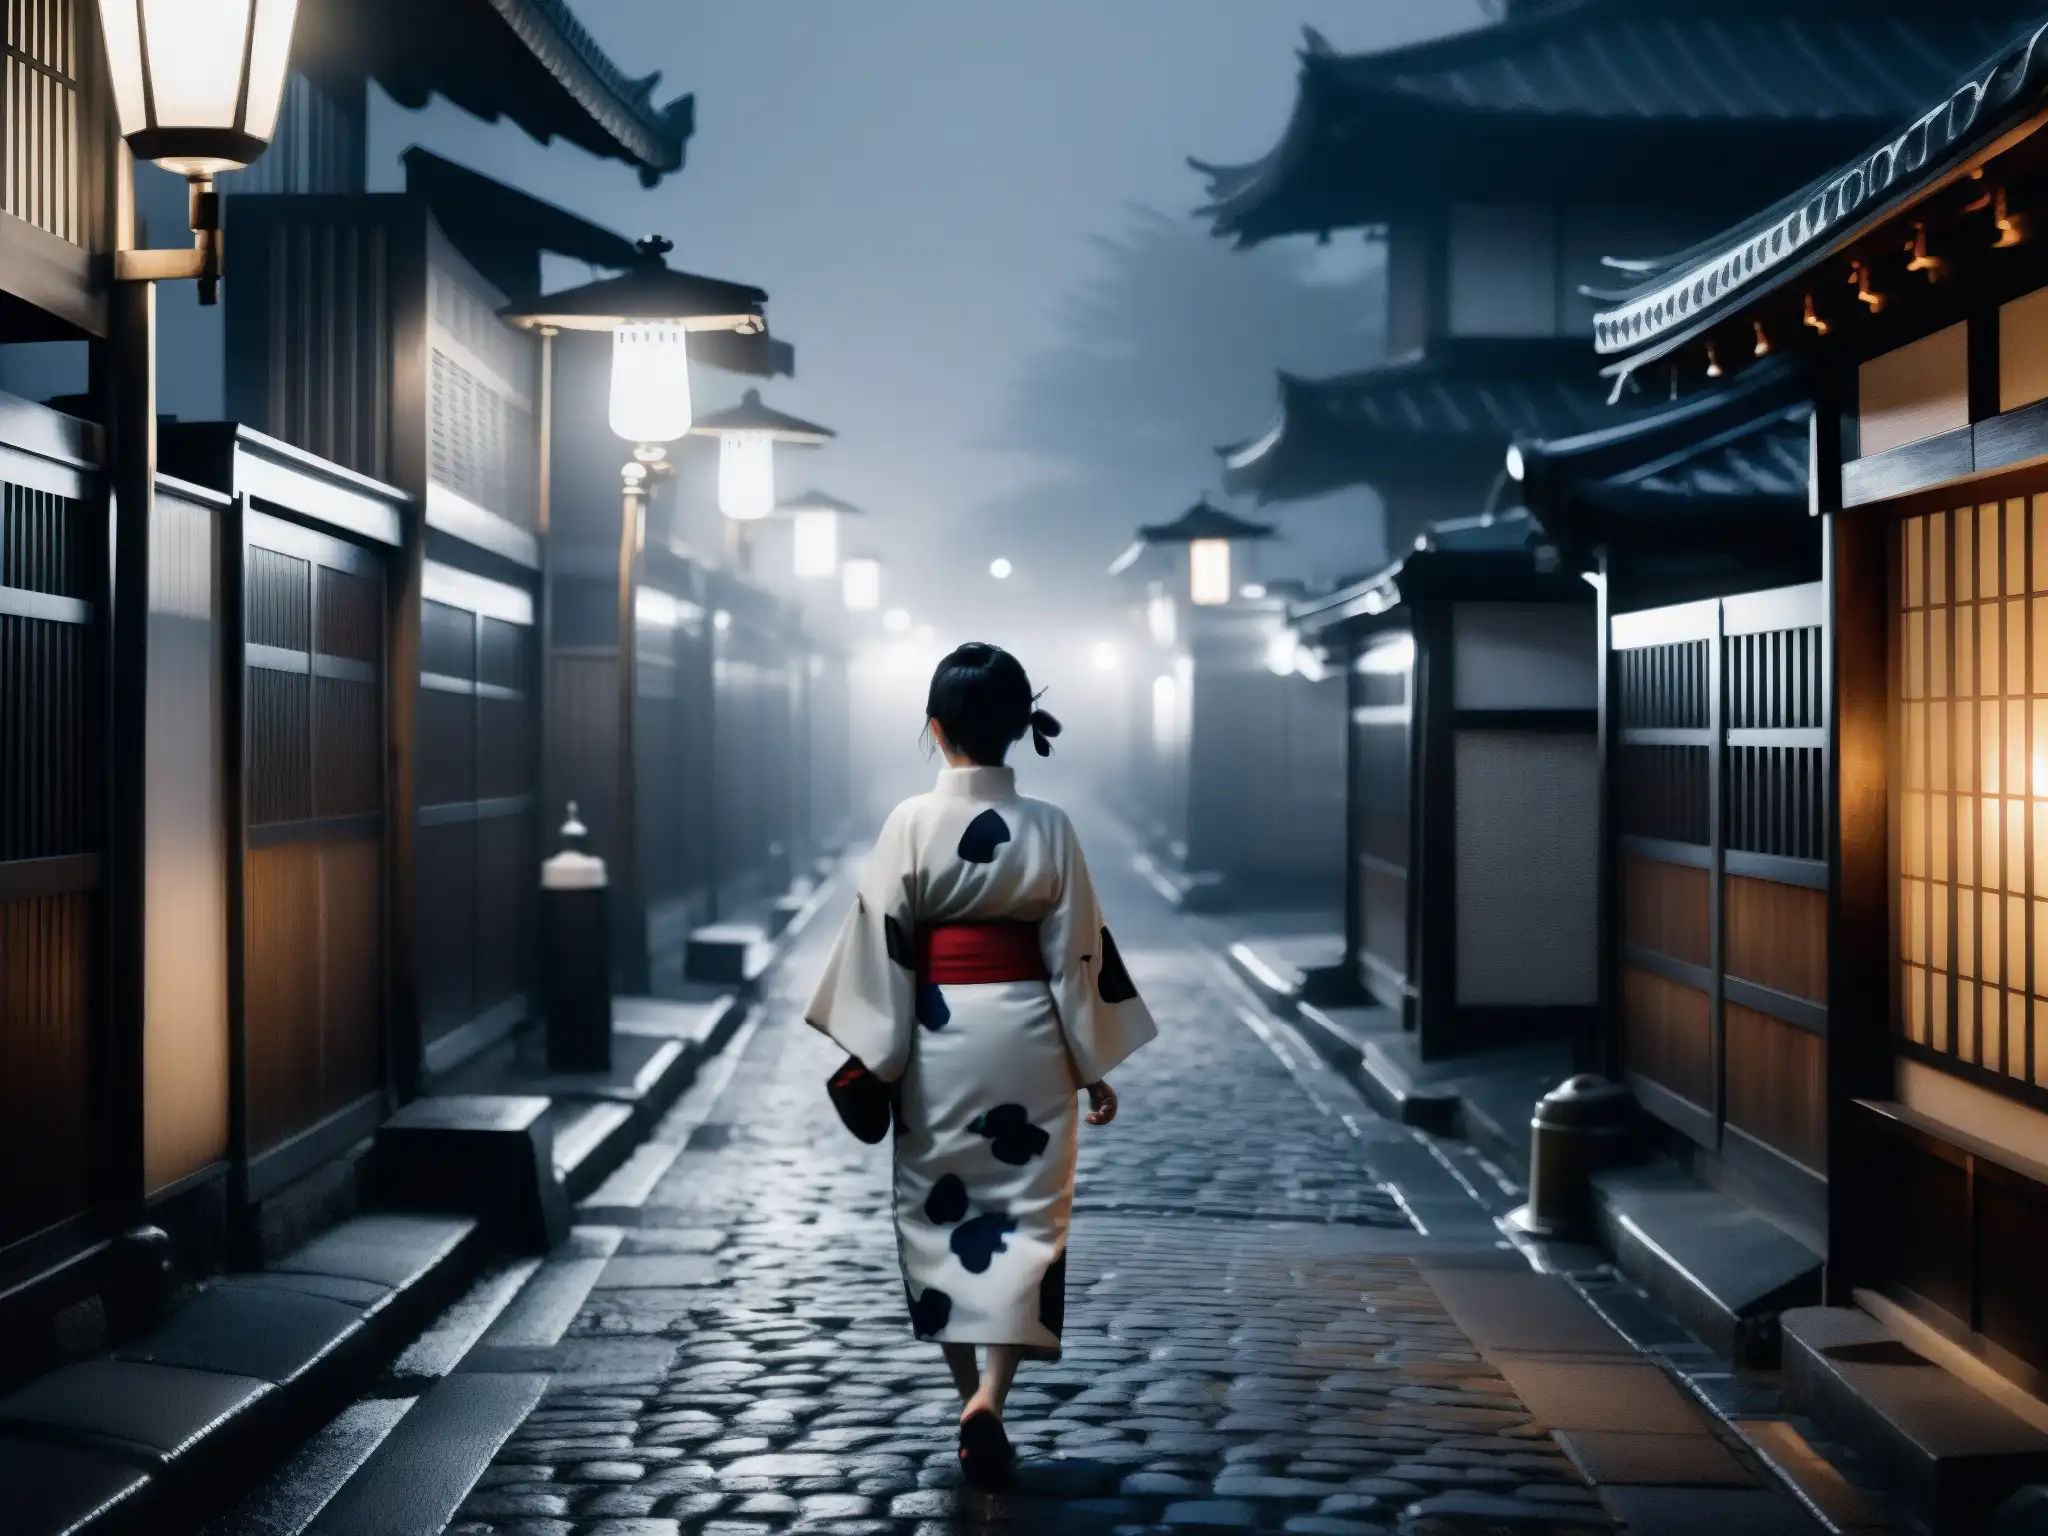 En una misteriosa calle japonesa de noche, una mujer en kimono camina de espaldas, evocando el origen del mito japonés KuchisakeOnna